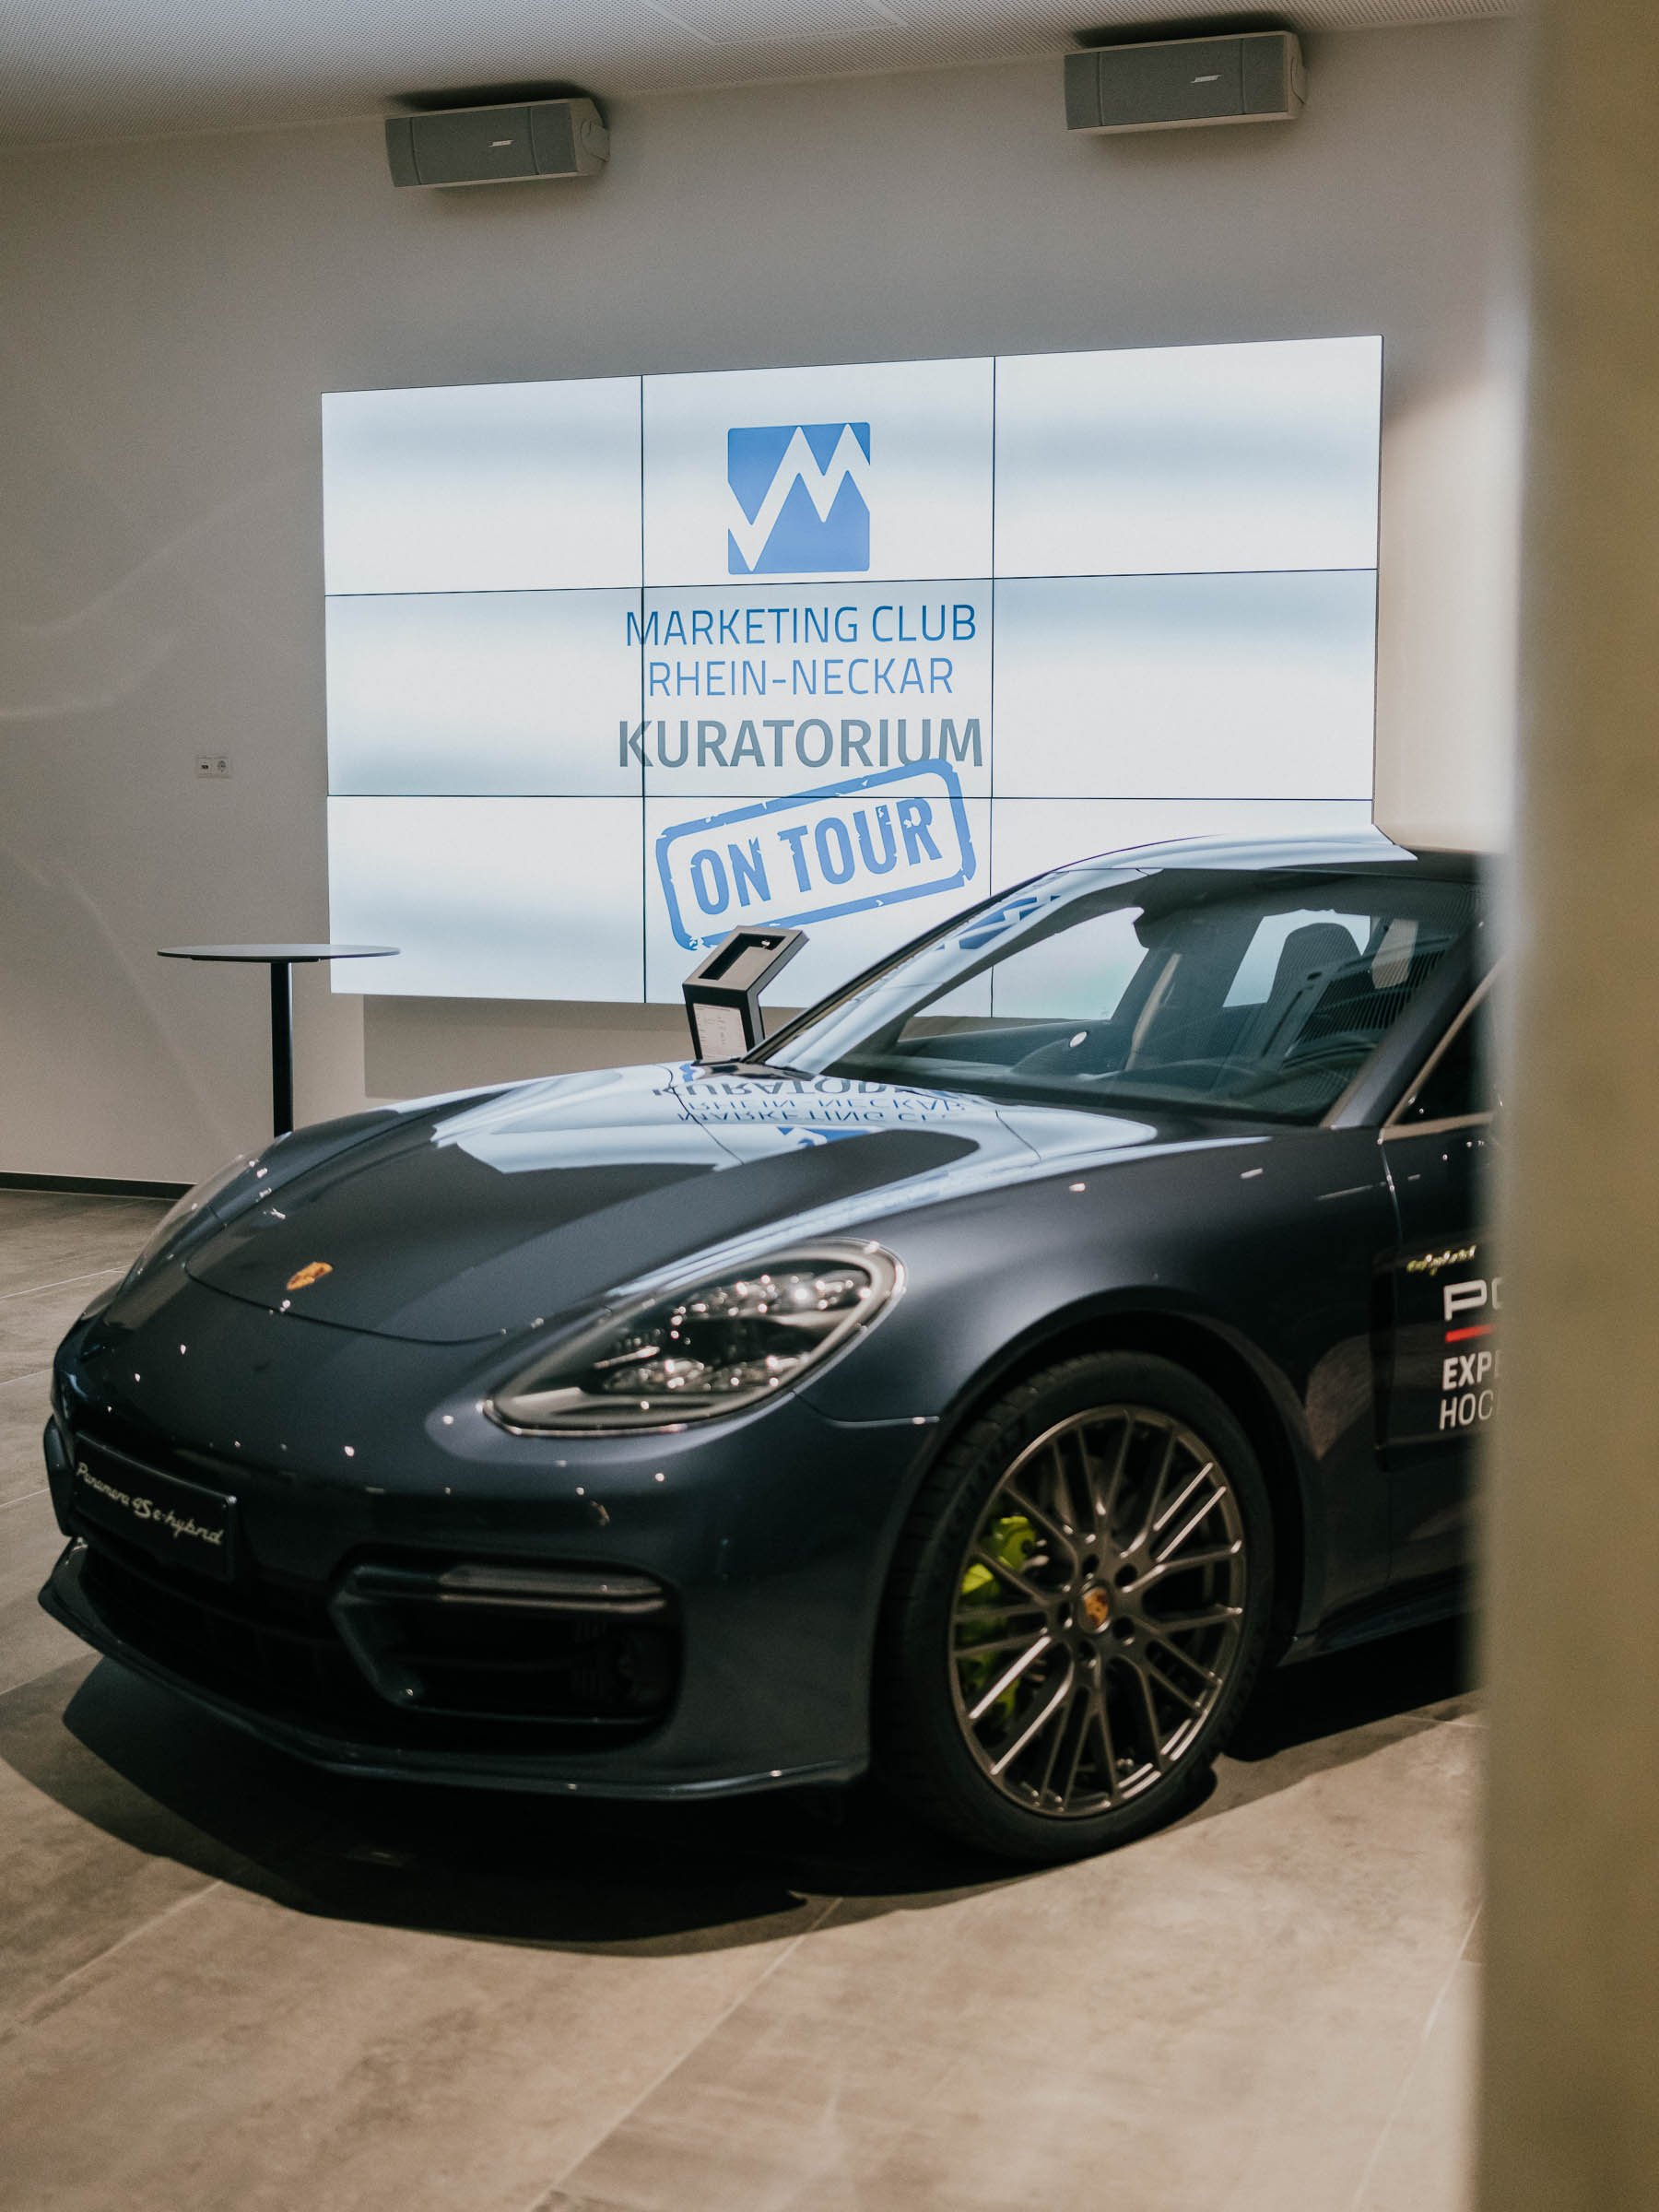 Porsche-Experience-Center-Hockenheim-Marketing-Club-Rhein-Neckar-24.jpg